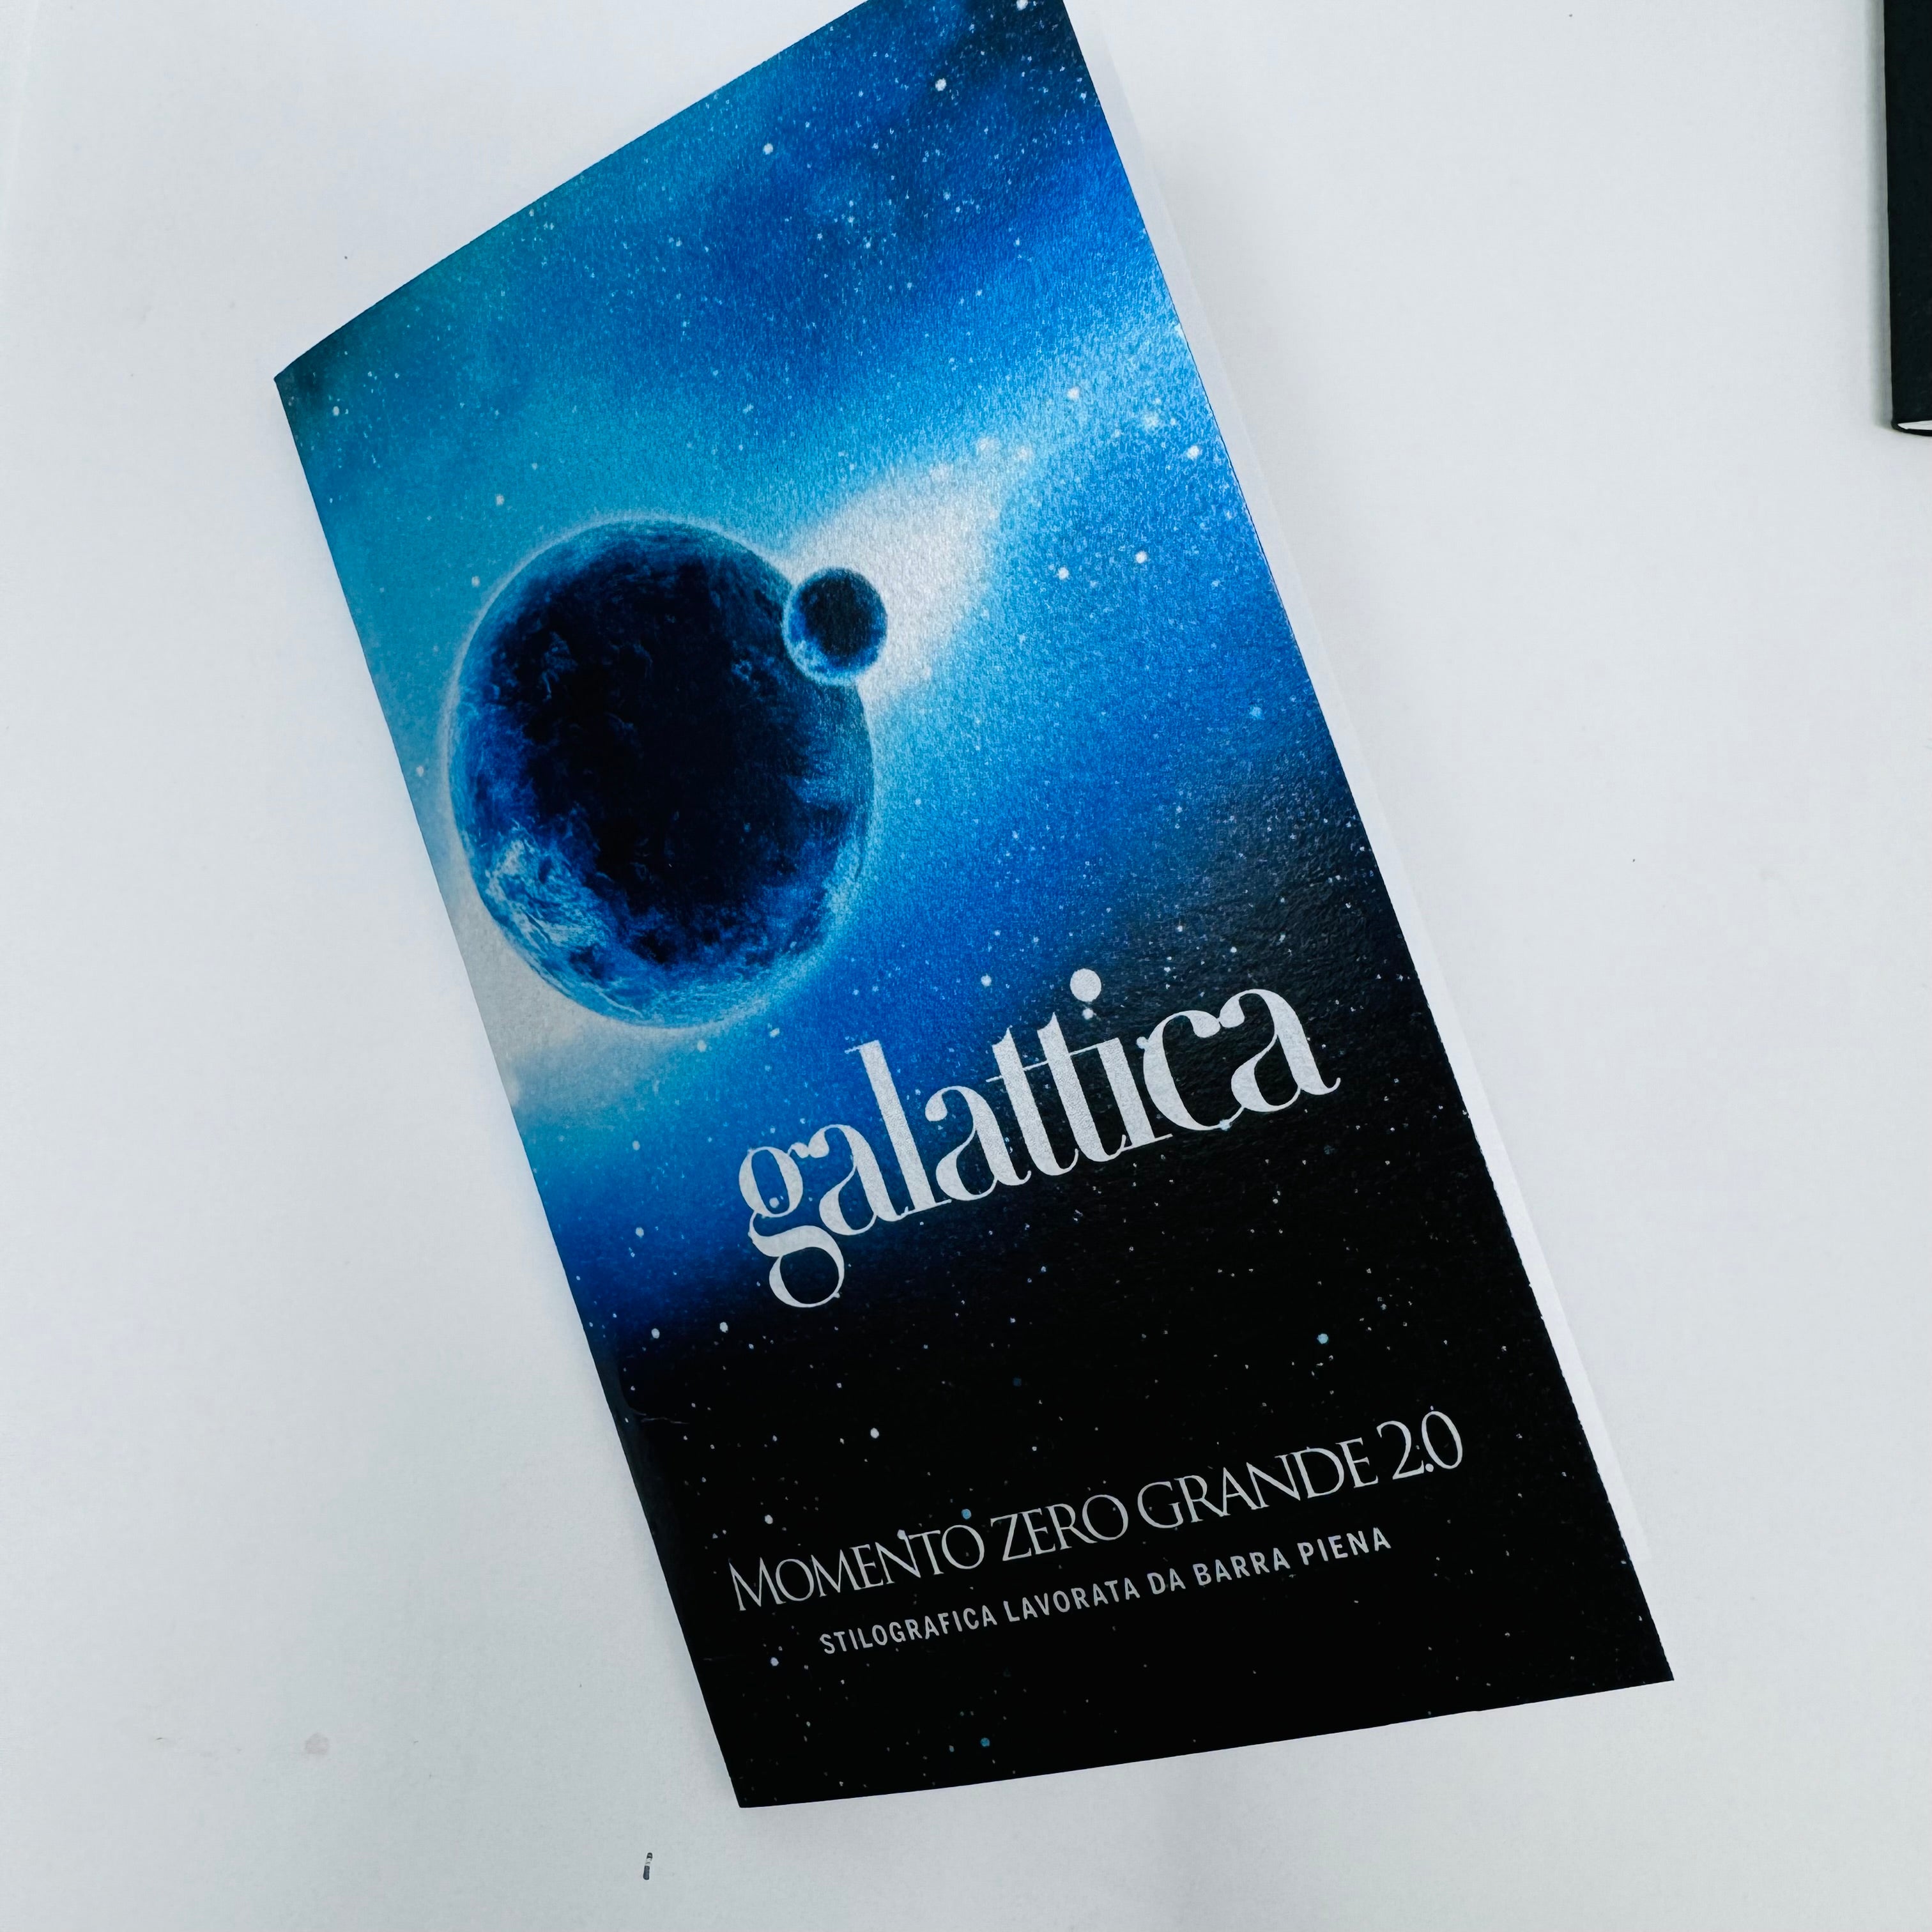 Leonardo Momento Zero Grande 2.0 - Galattica - Planetary Nebula (Limited Edition)-Pen Boutique Ltd